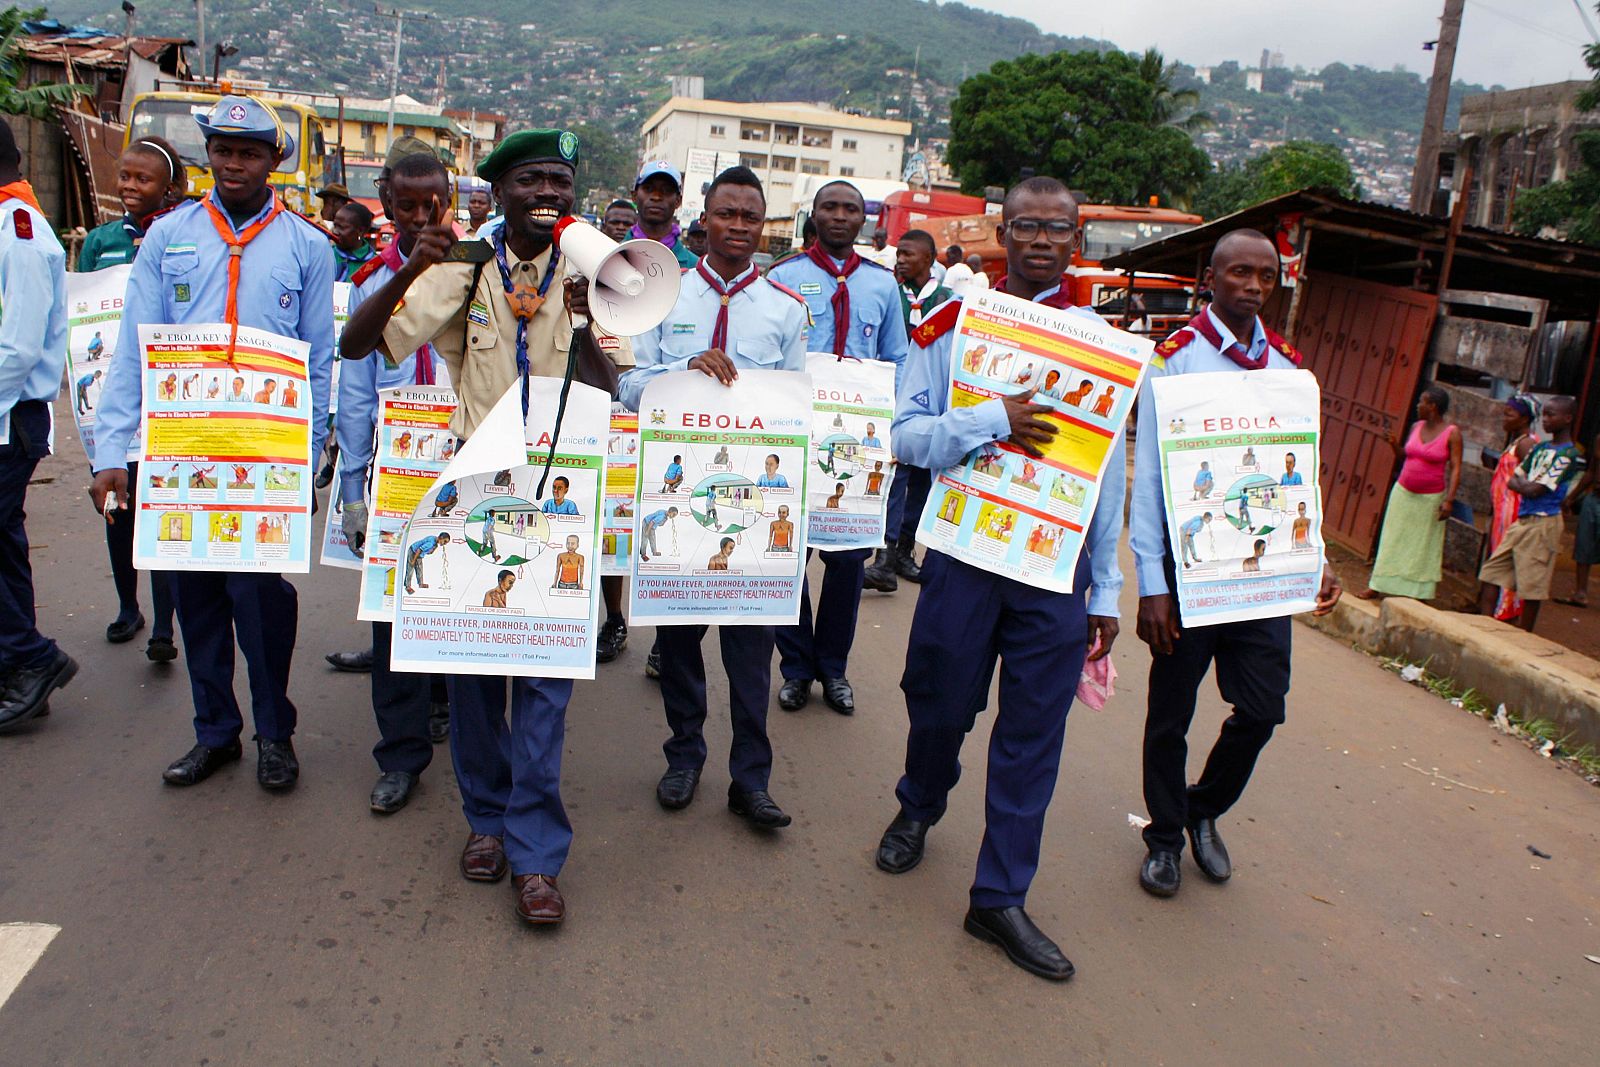 Campaña de información callejera sobre el ébola en la capital de Sierra Leona, Freetown